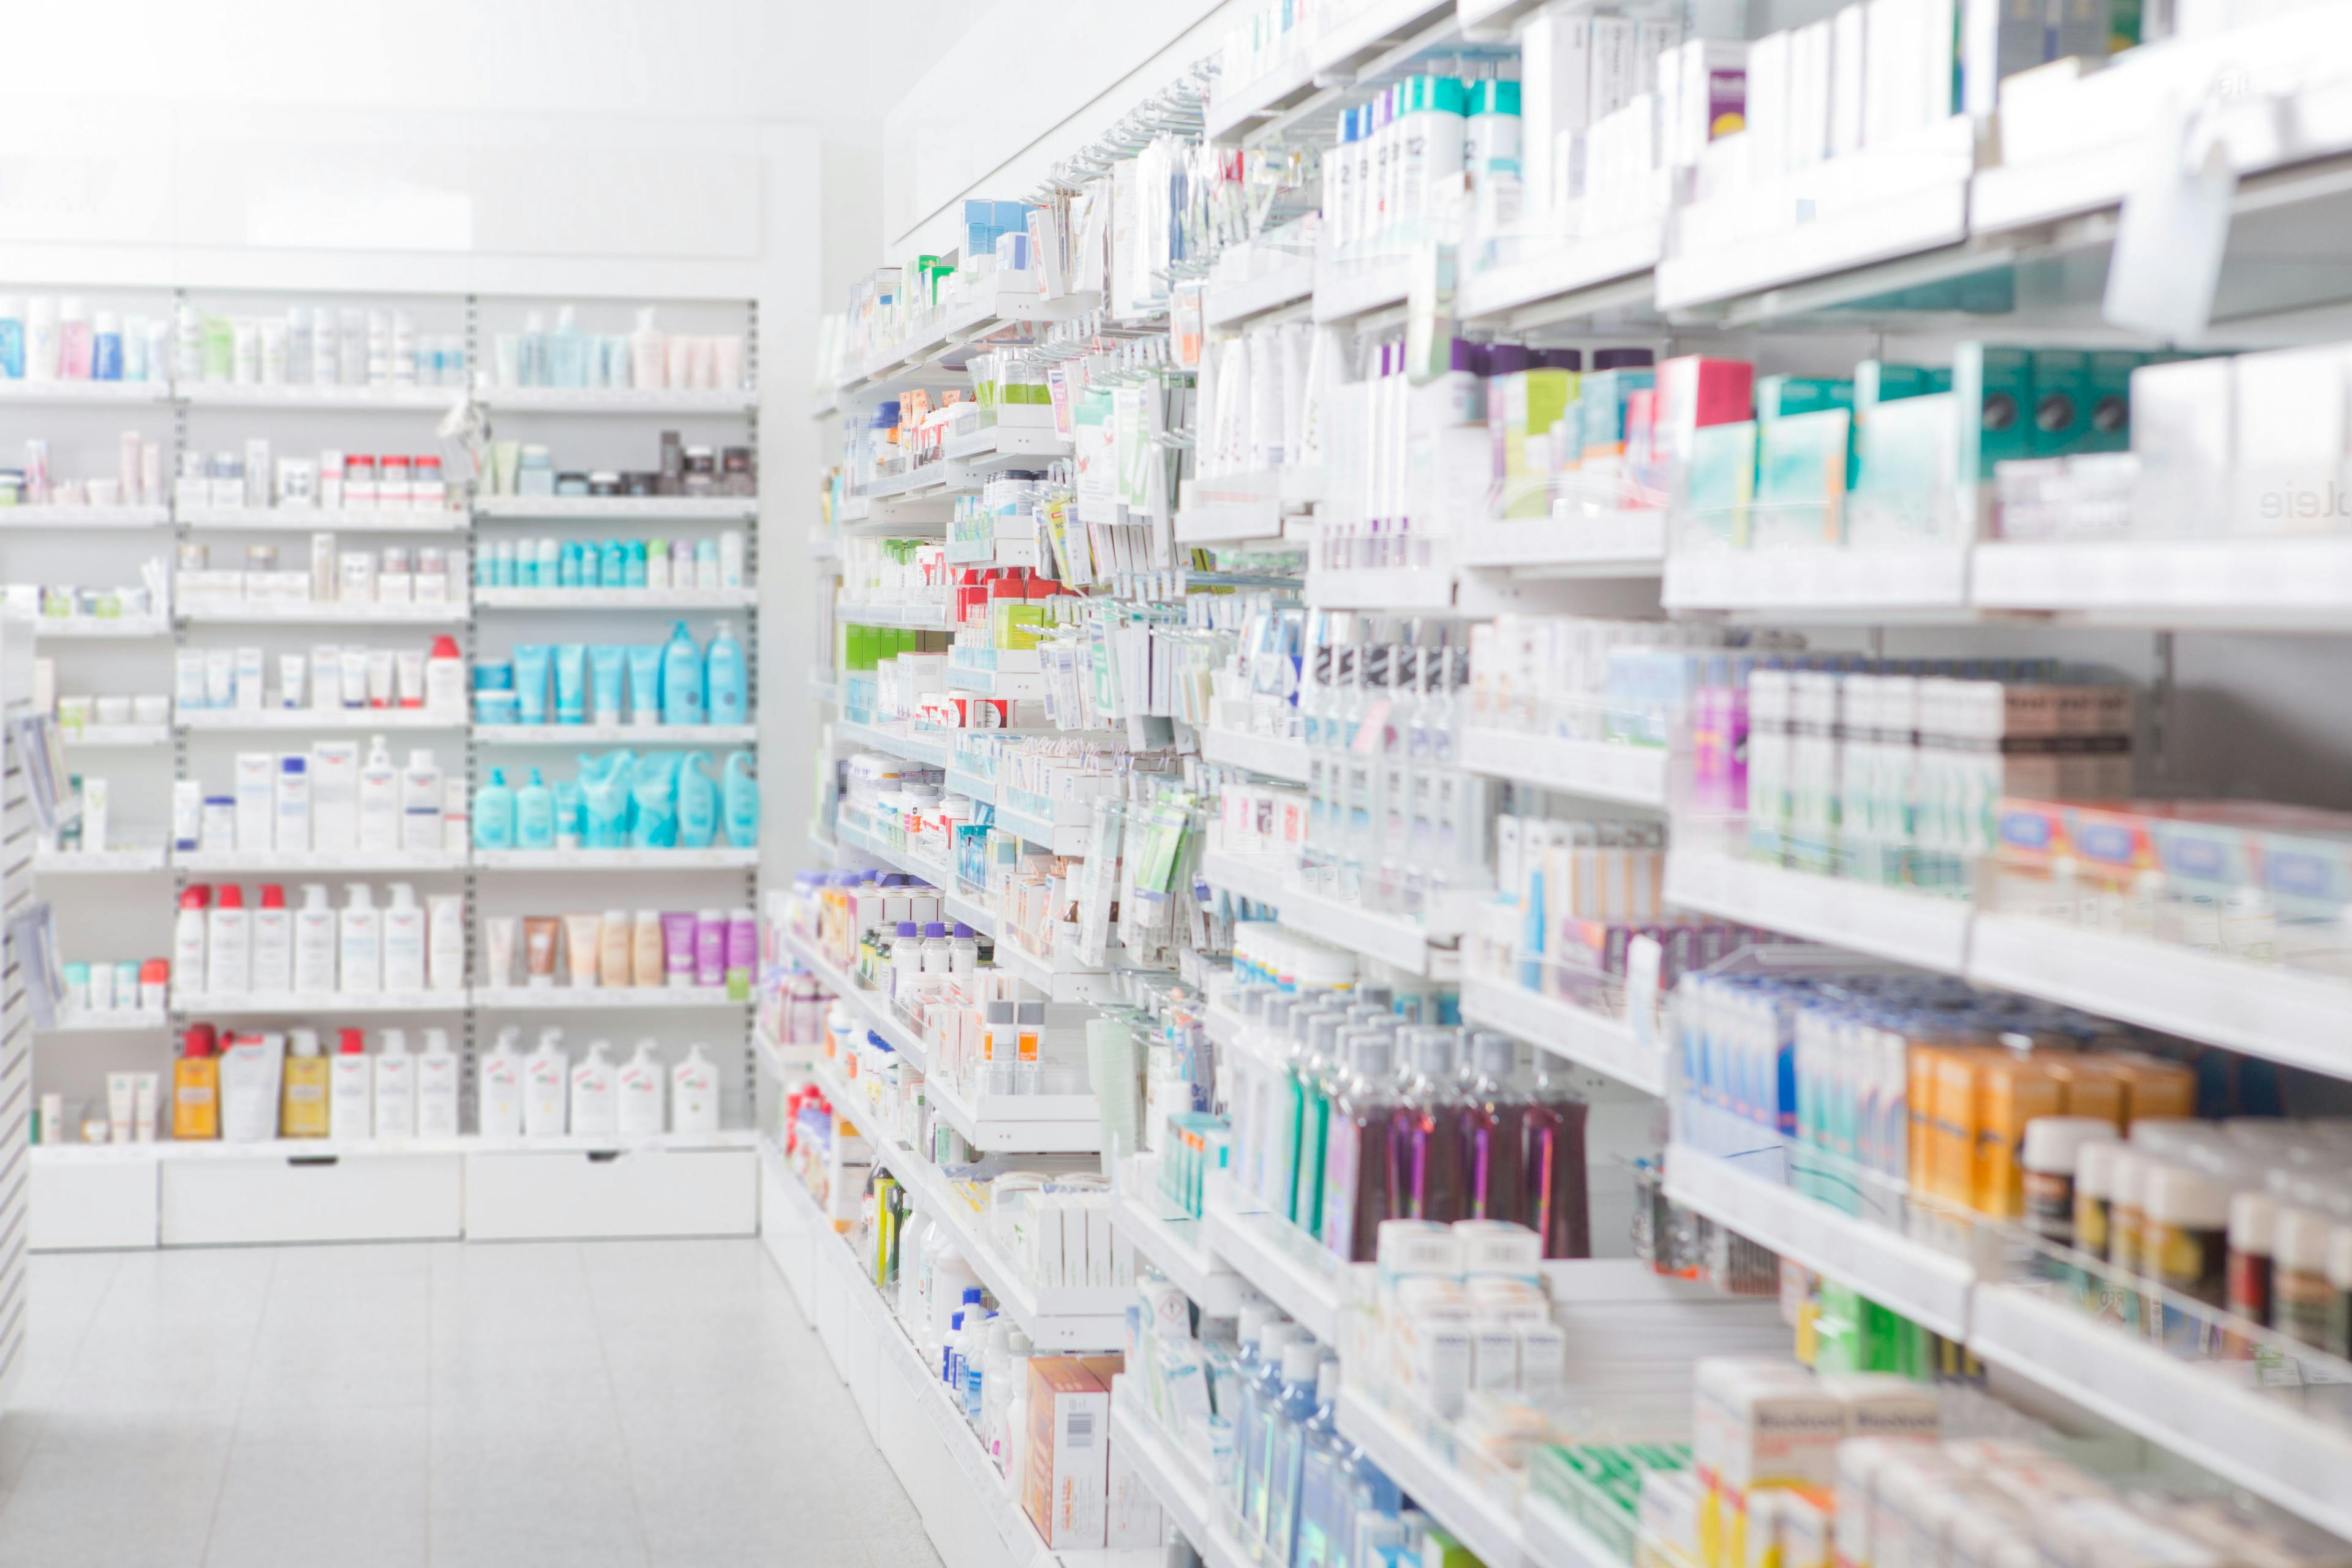 Pharmacy shelves, interior